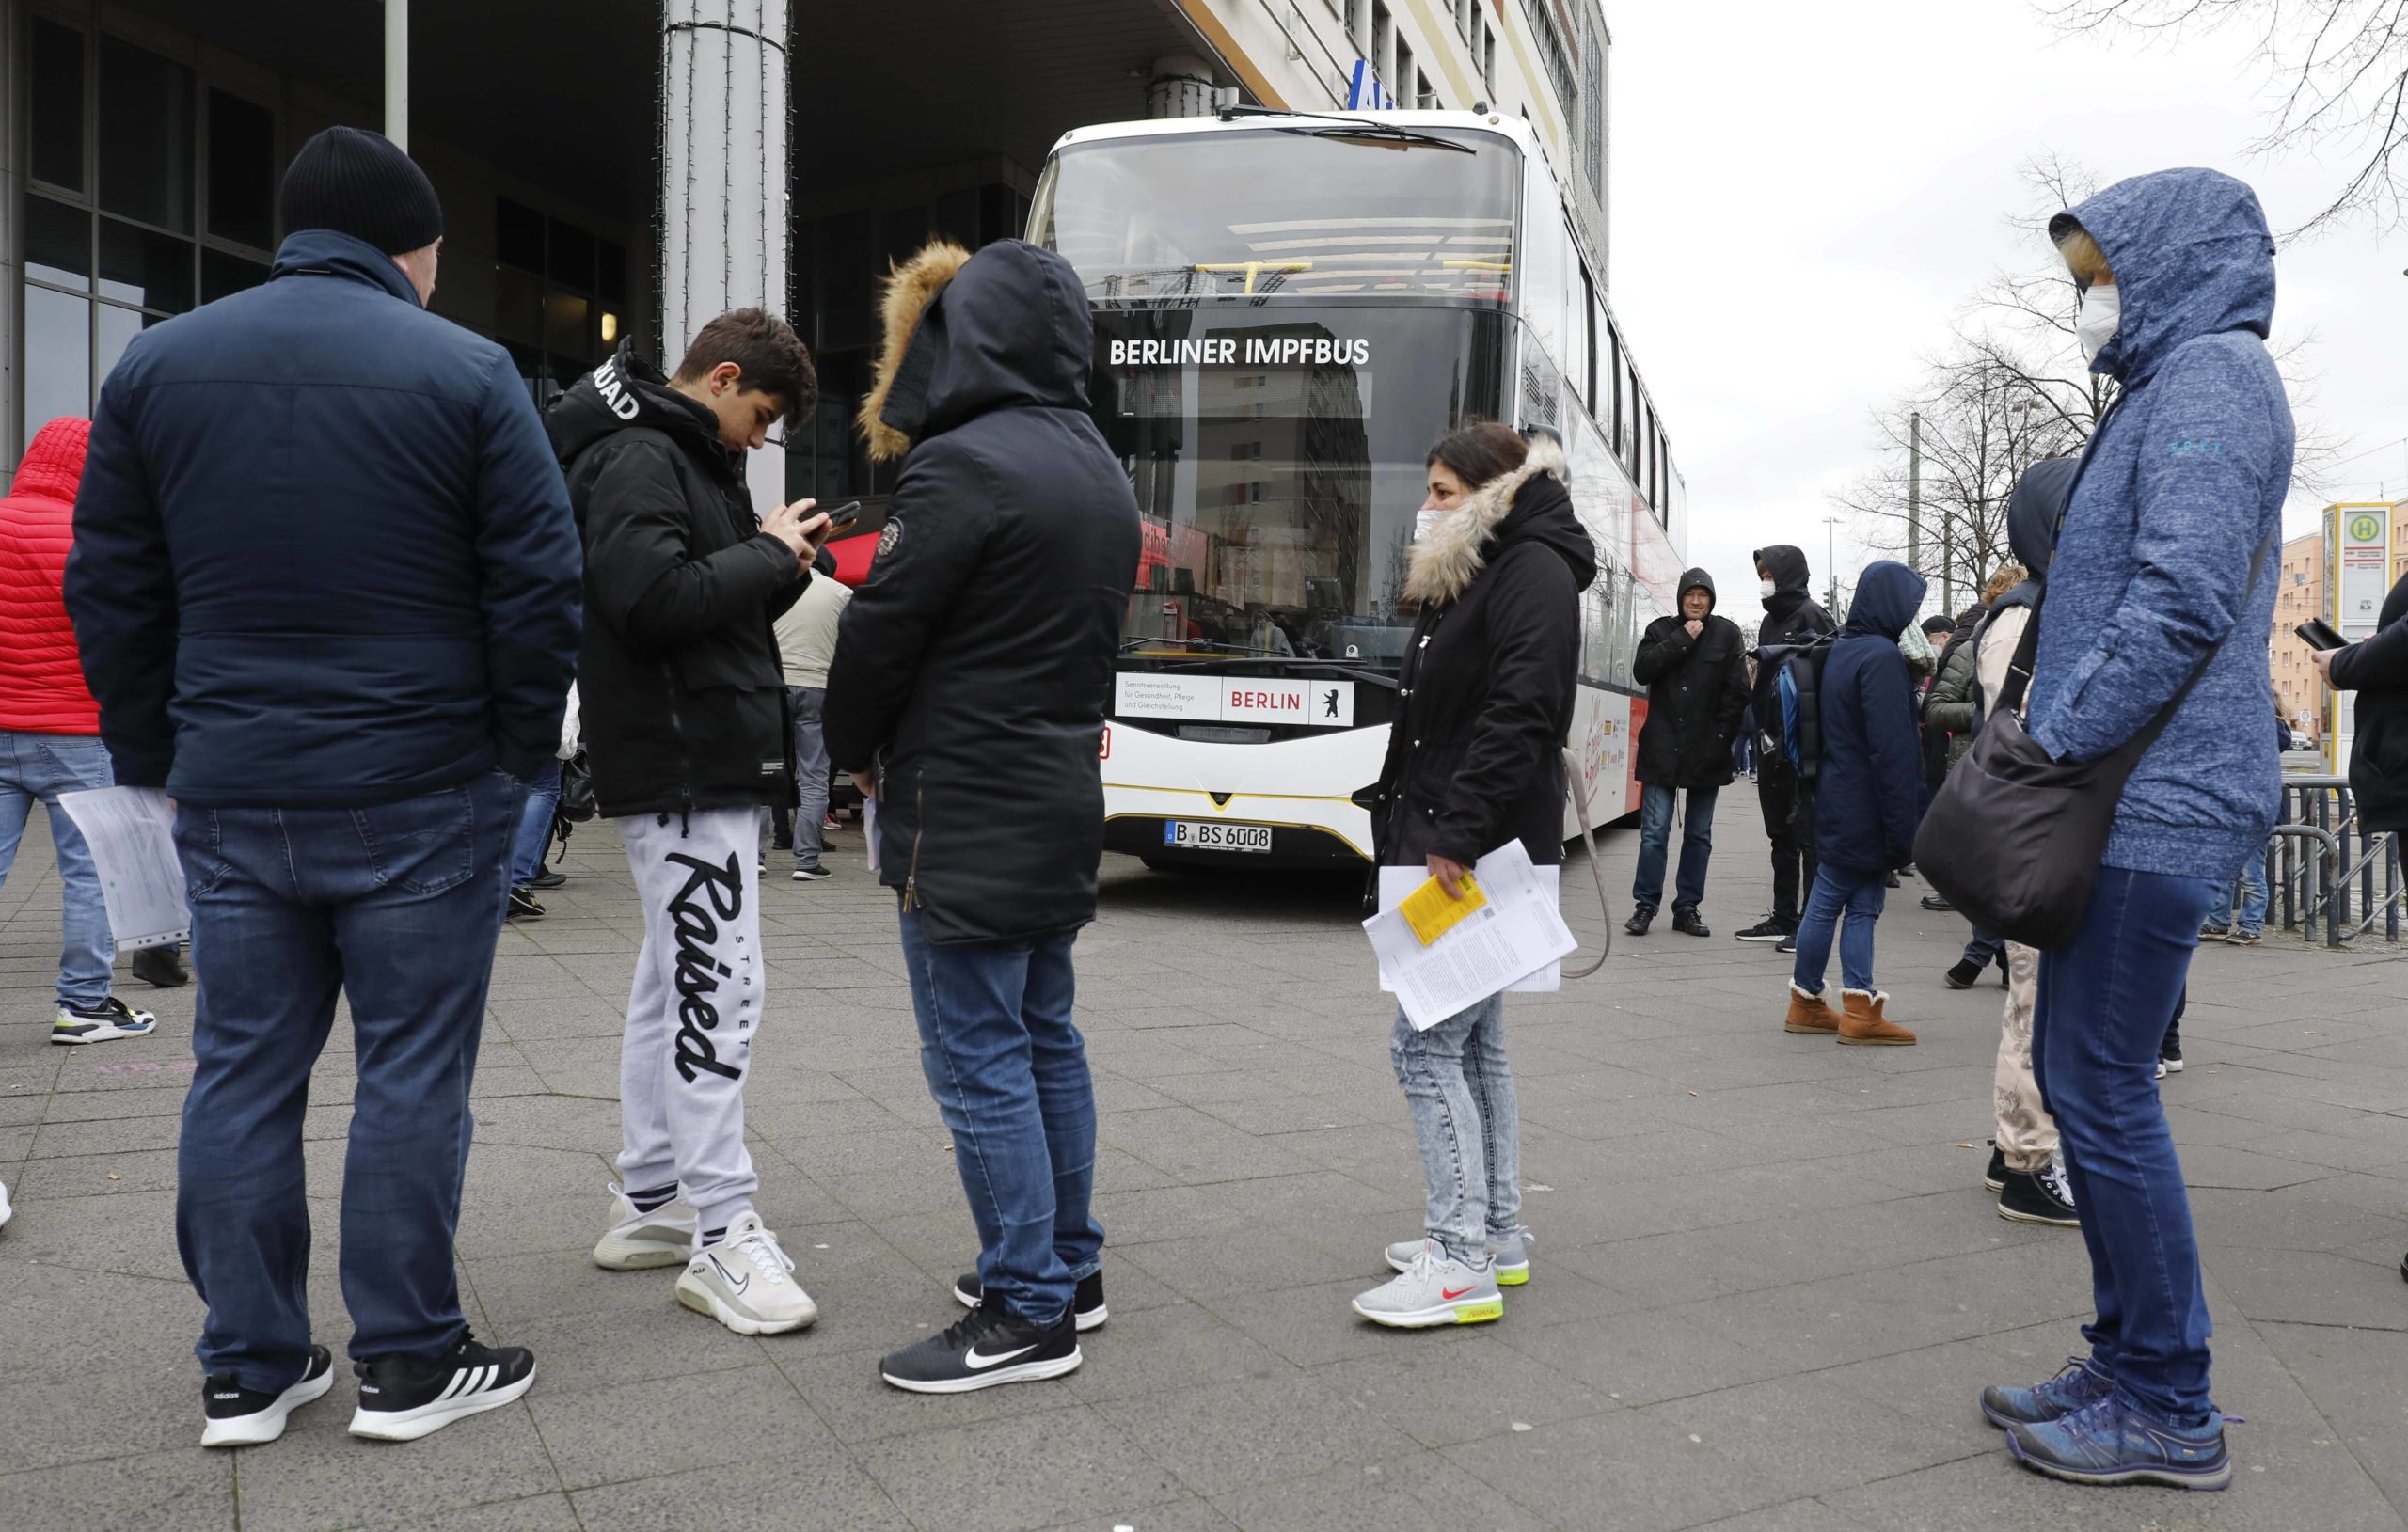 Anstehen am Berliner Impfbus in Lichtenberg: Die Zeit sollte man sich nehmen. Foto: Imago/Jochen Eckel